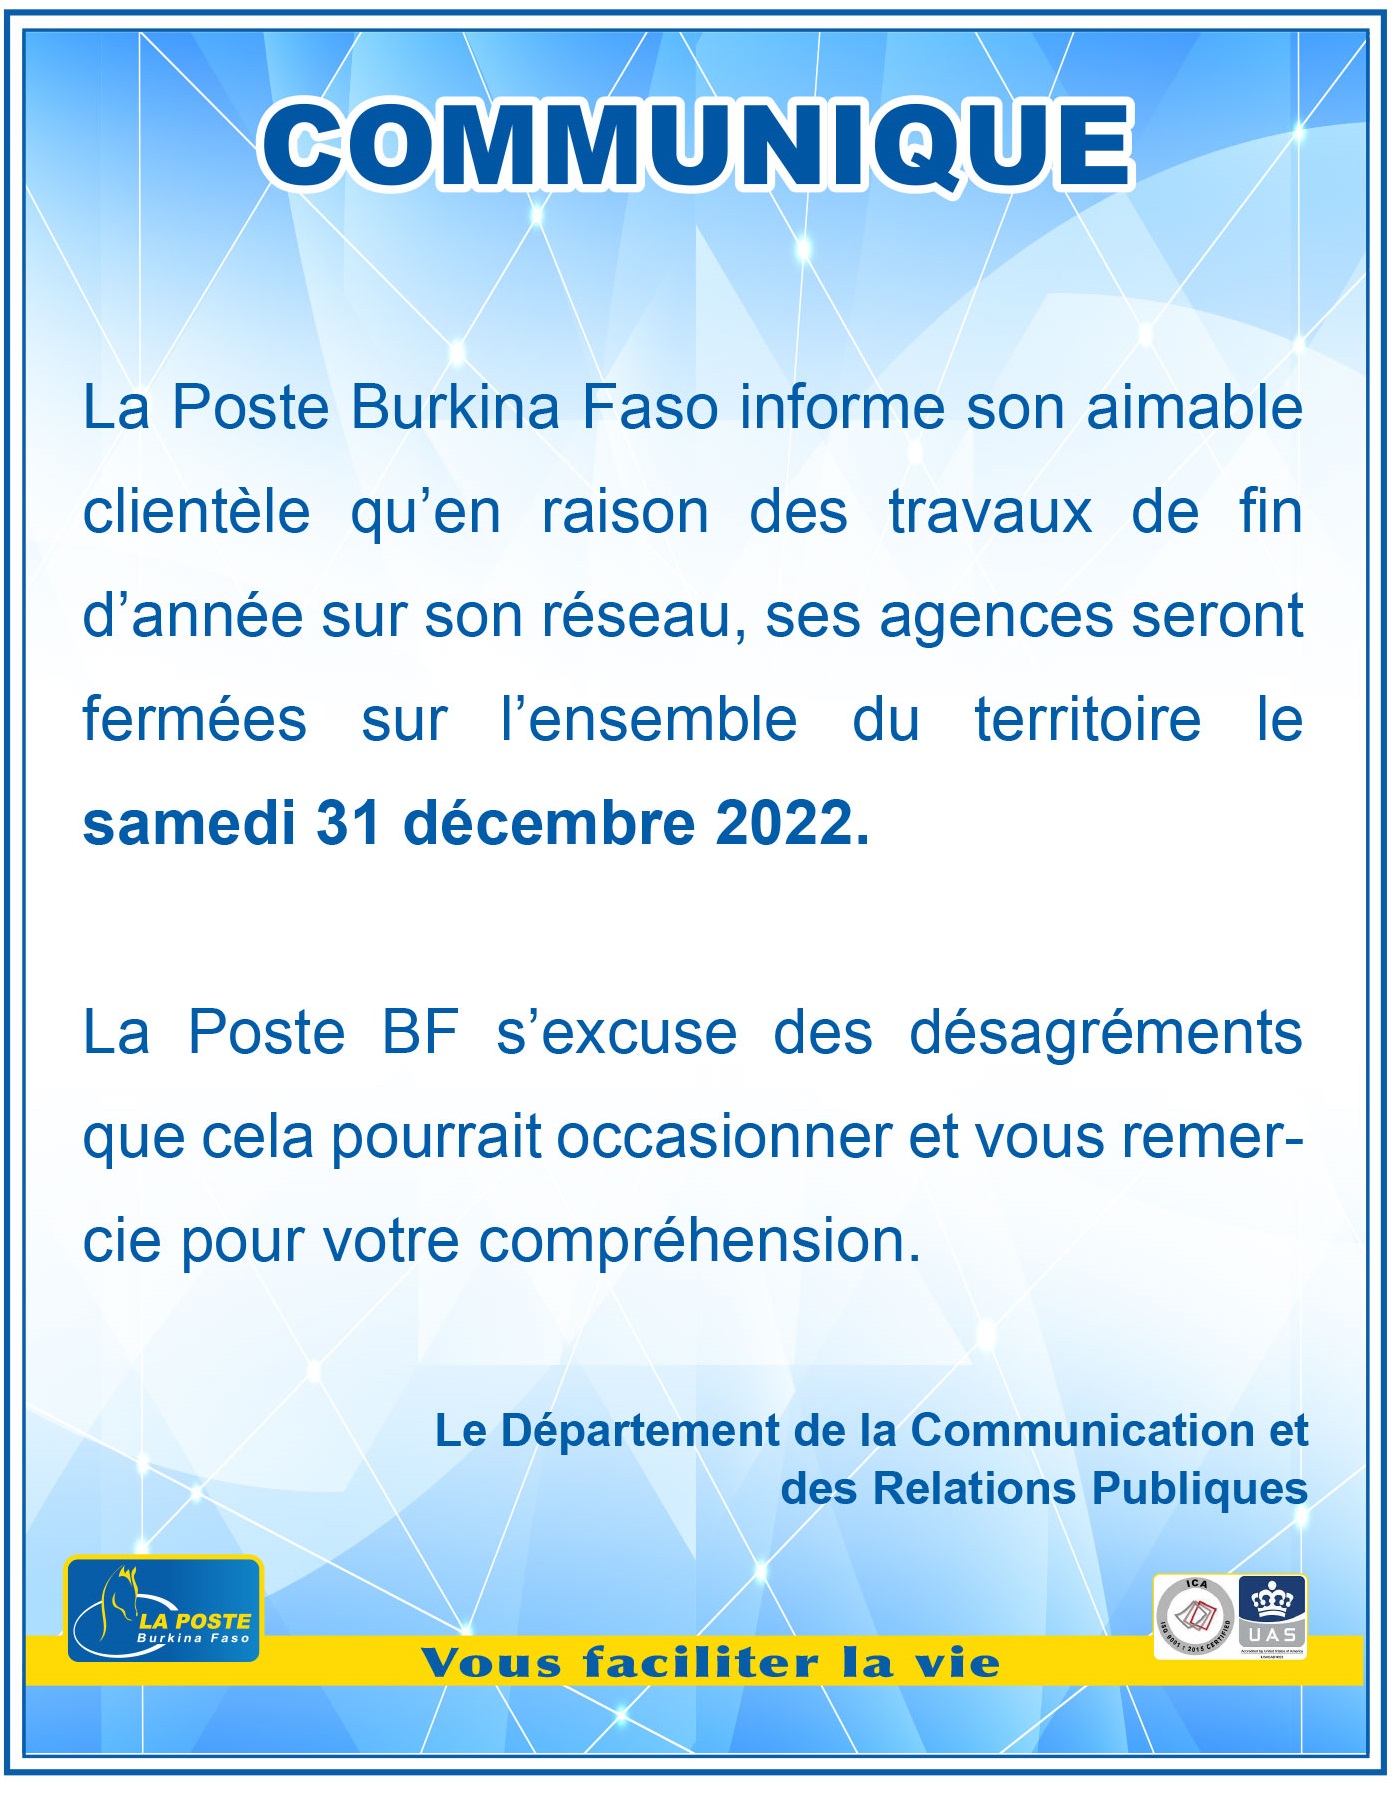 La poste Burkina Faso : Les agences seront fermées sur l’ensemble du territoire le 31 décembres 2022